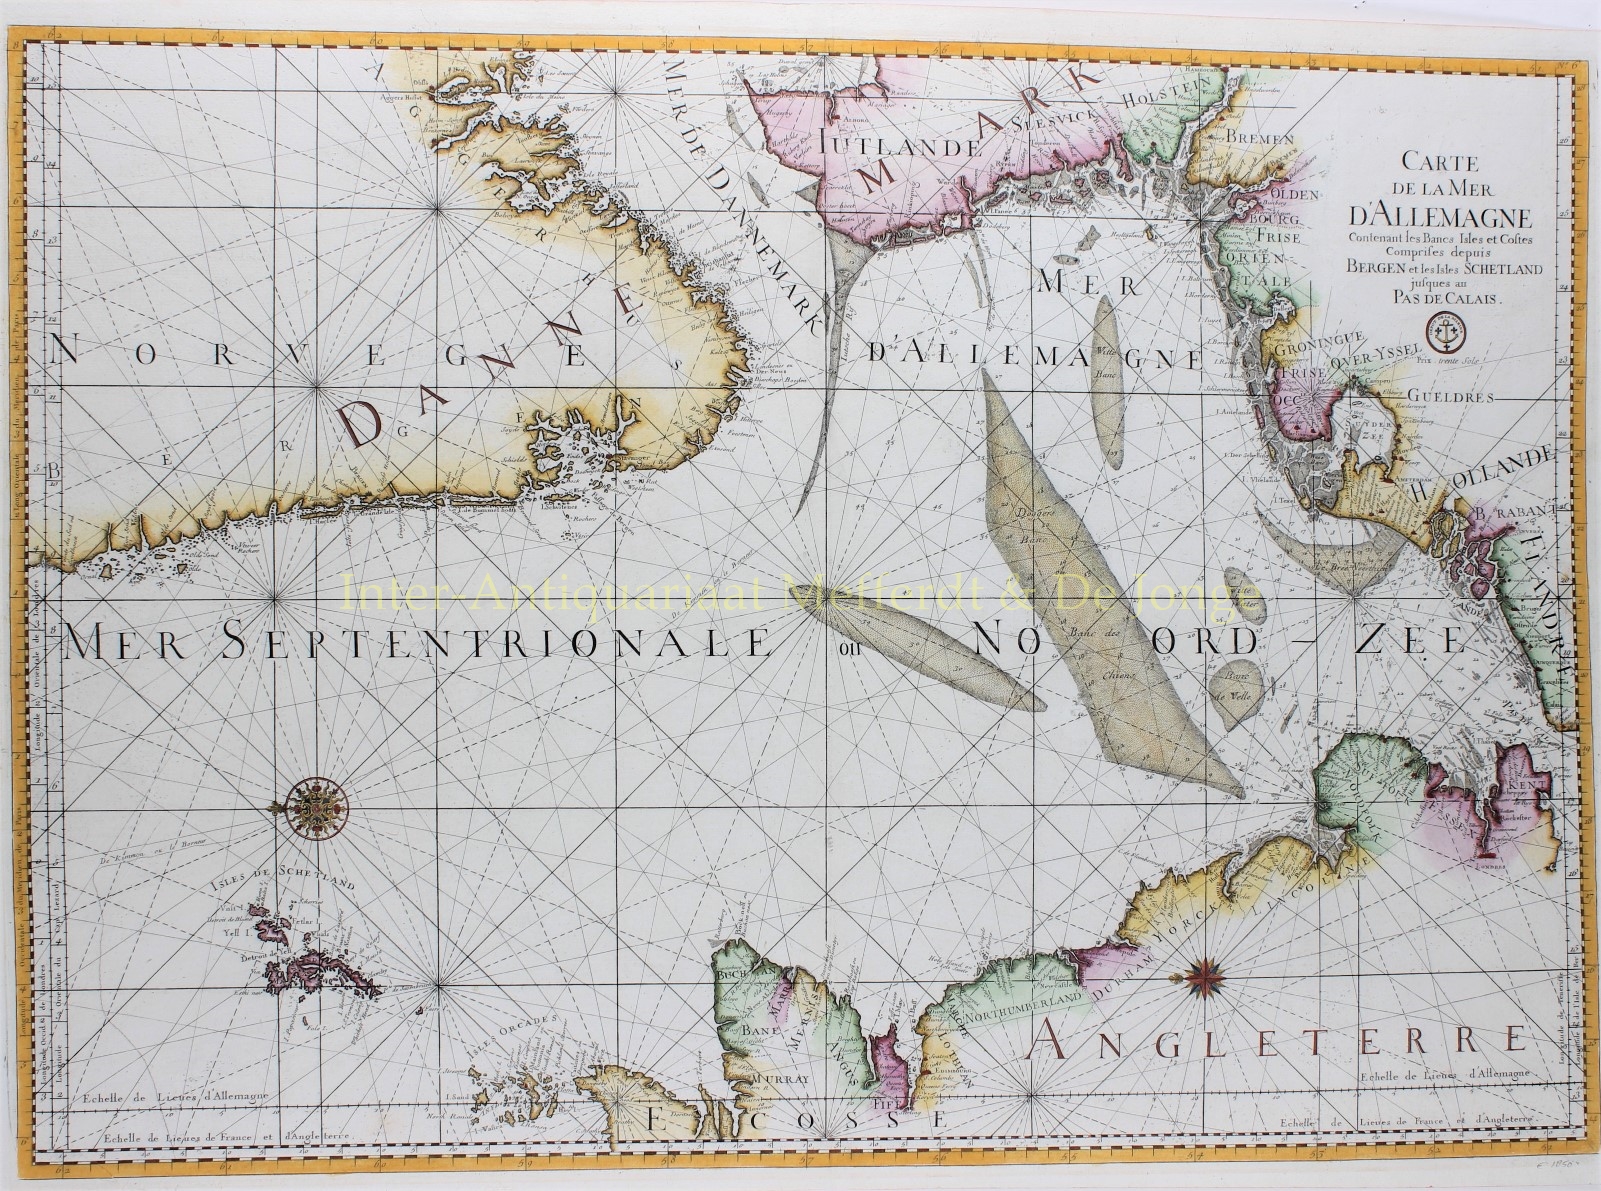 Bellin-- Jacques-Nicolas - North Sea - Jacques-Nicolas Bellin, ca. 1770